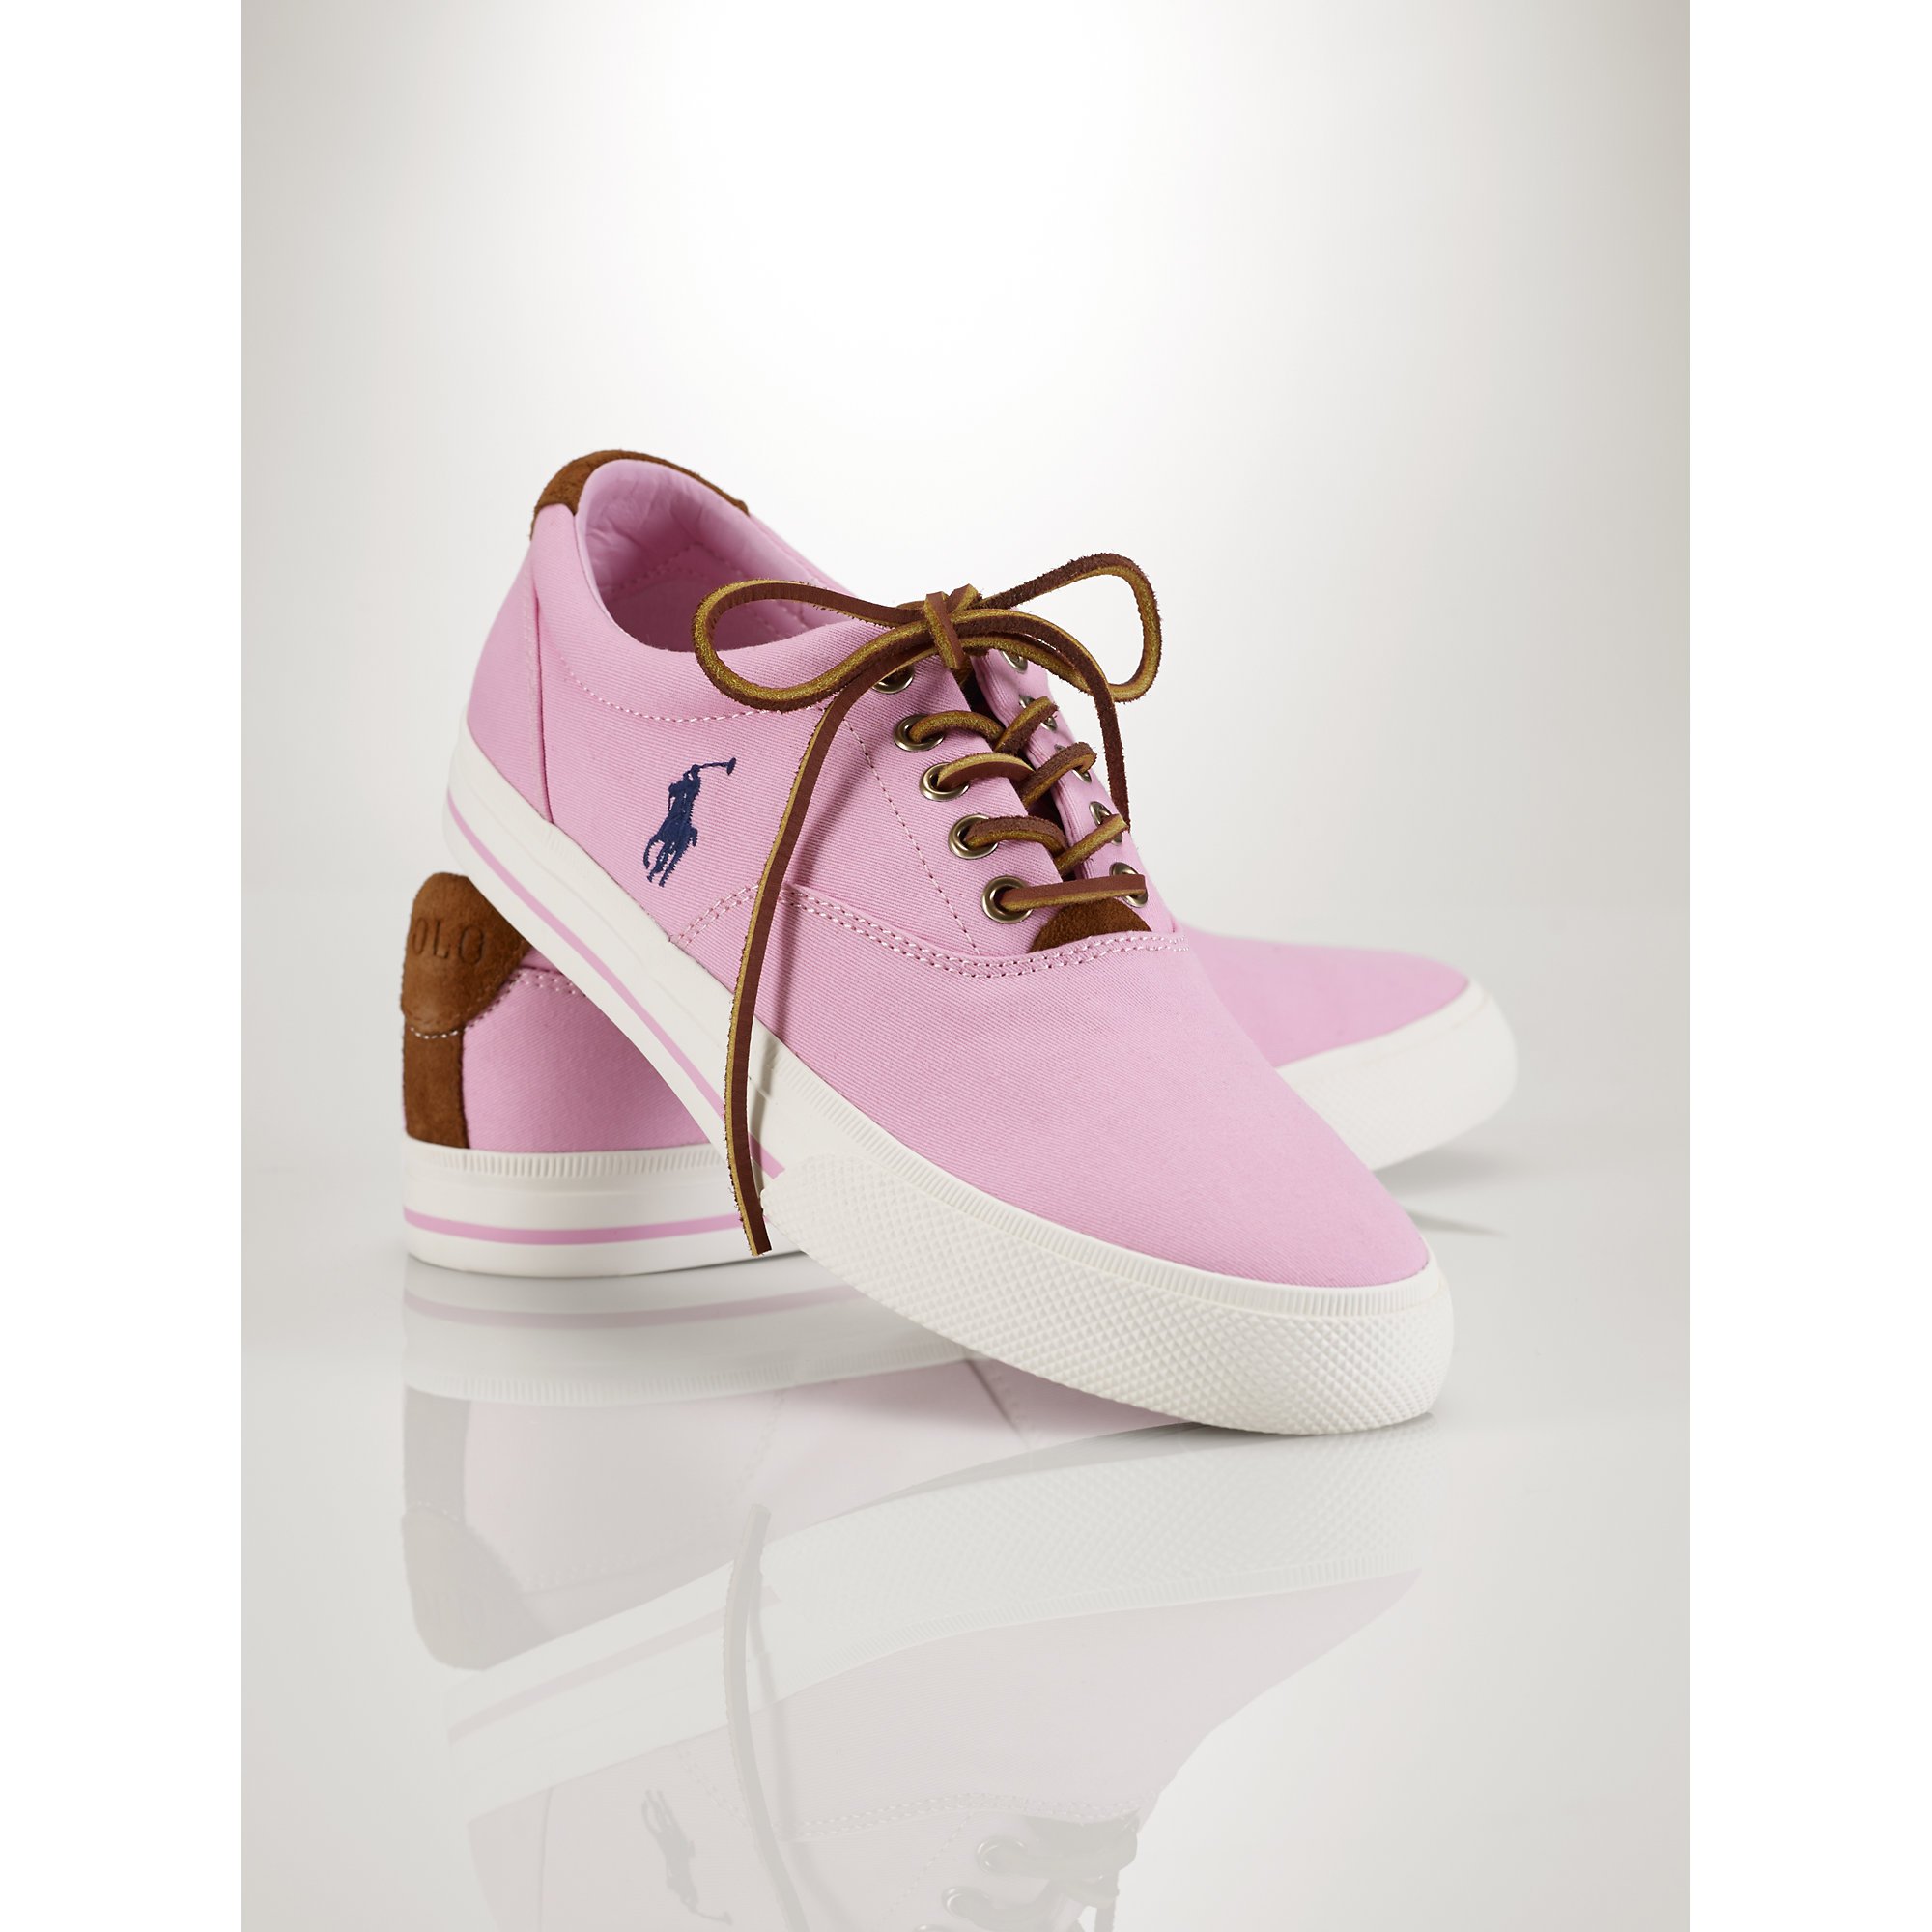 Total 81+ imagen pink ralph lauren shoes